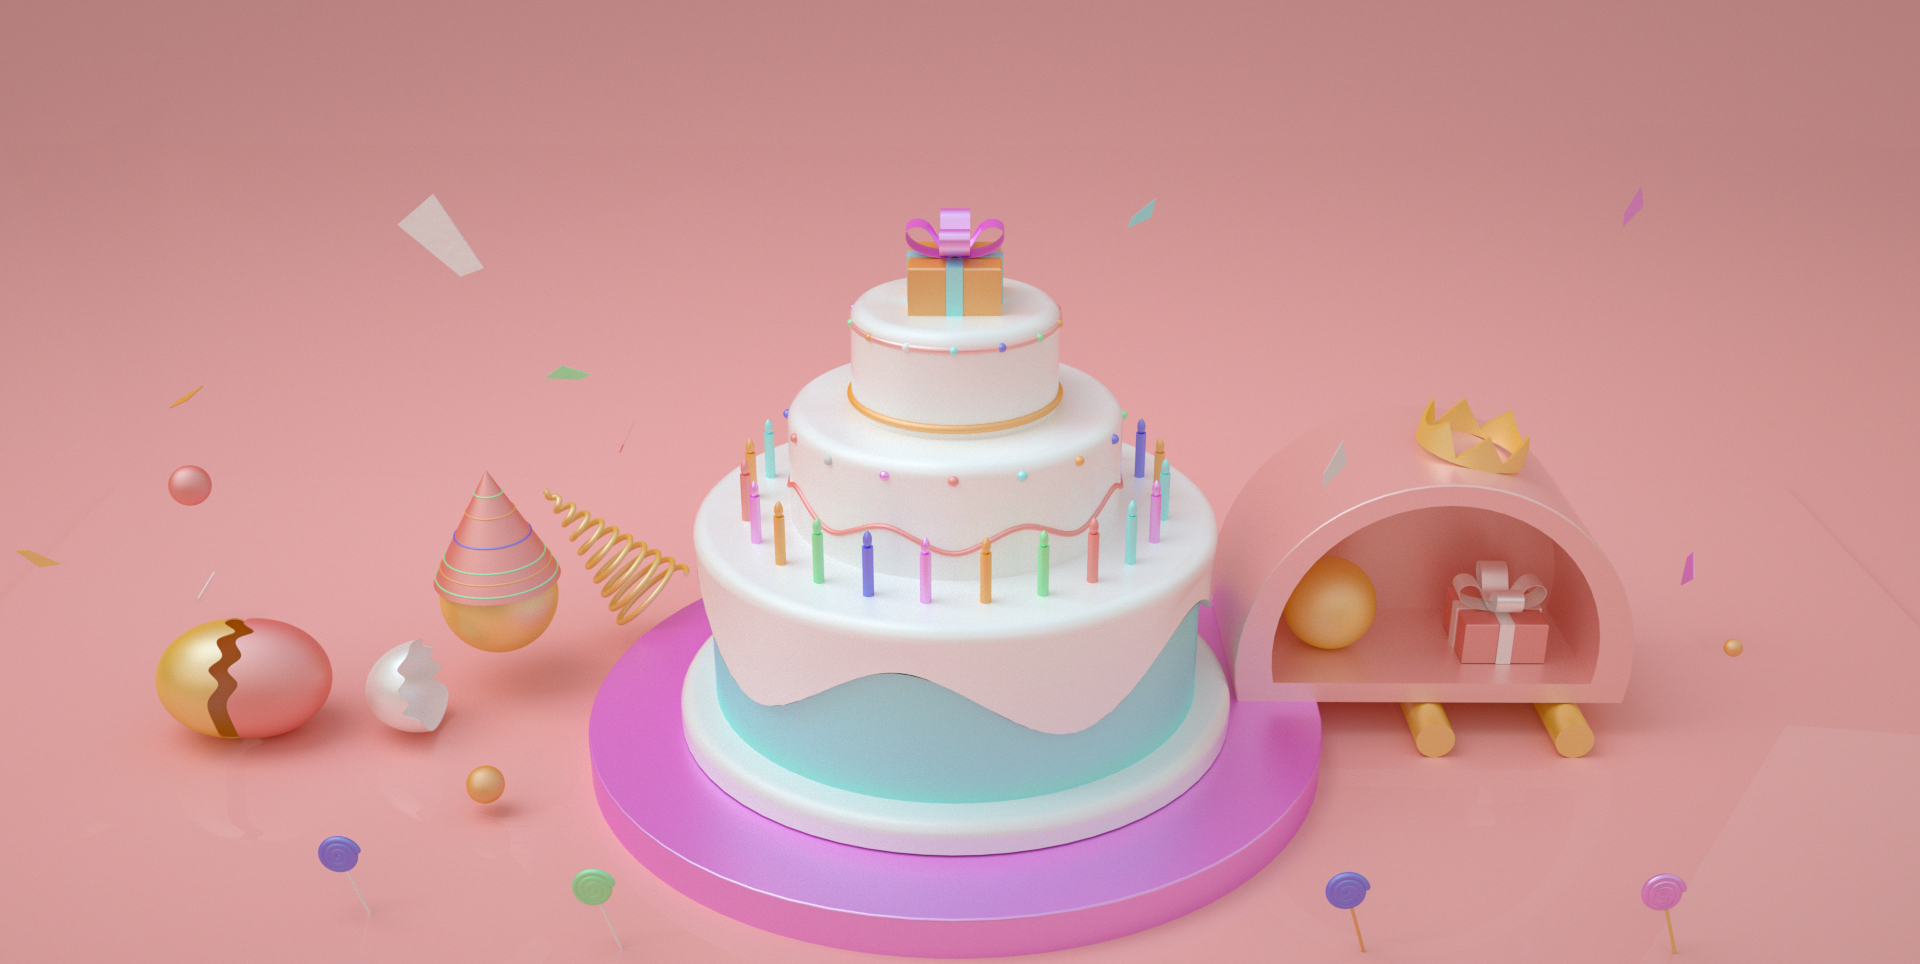 C4D模型周年庆生日礼物蛋糕电商促销场景026.jpg